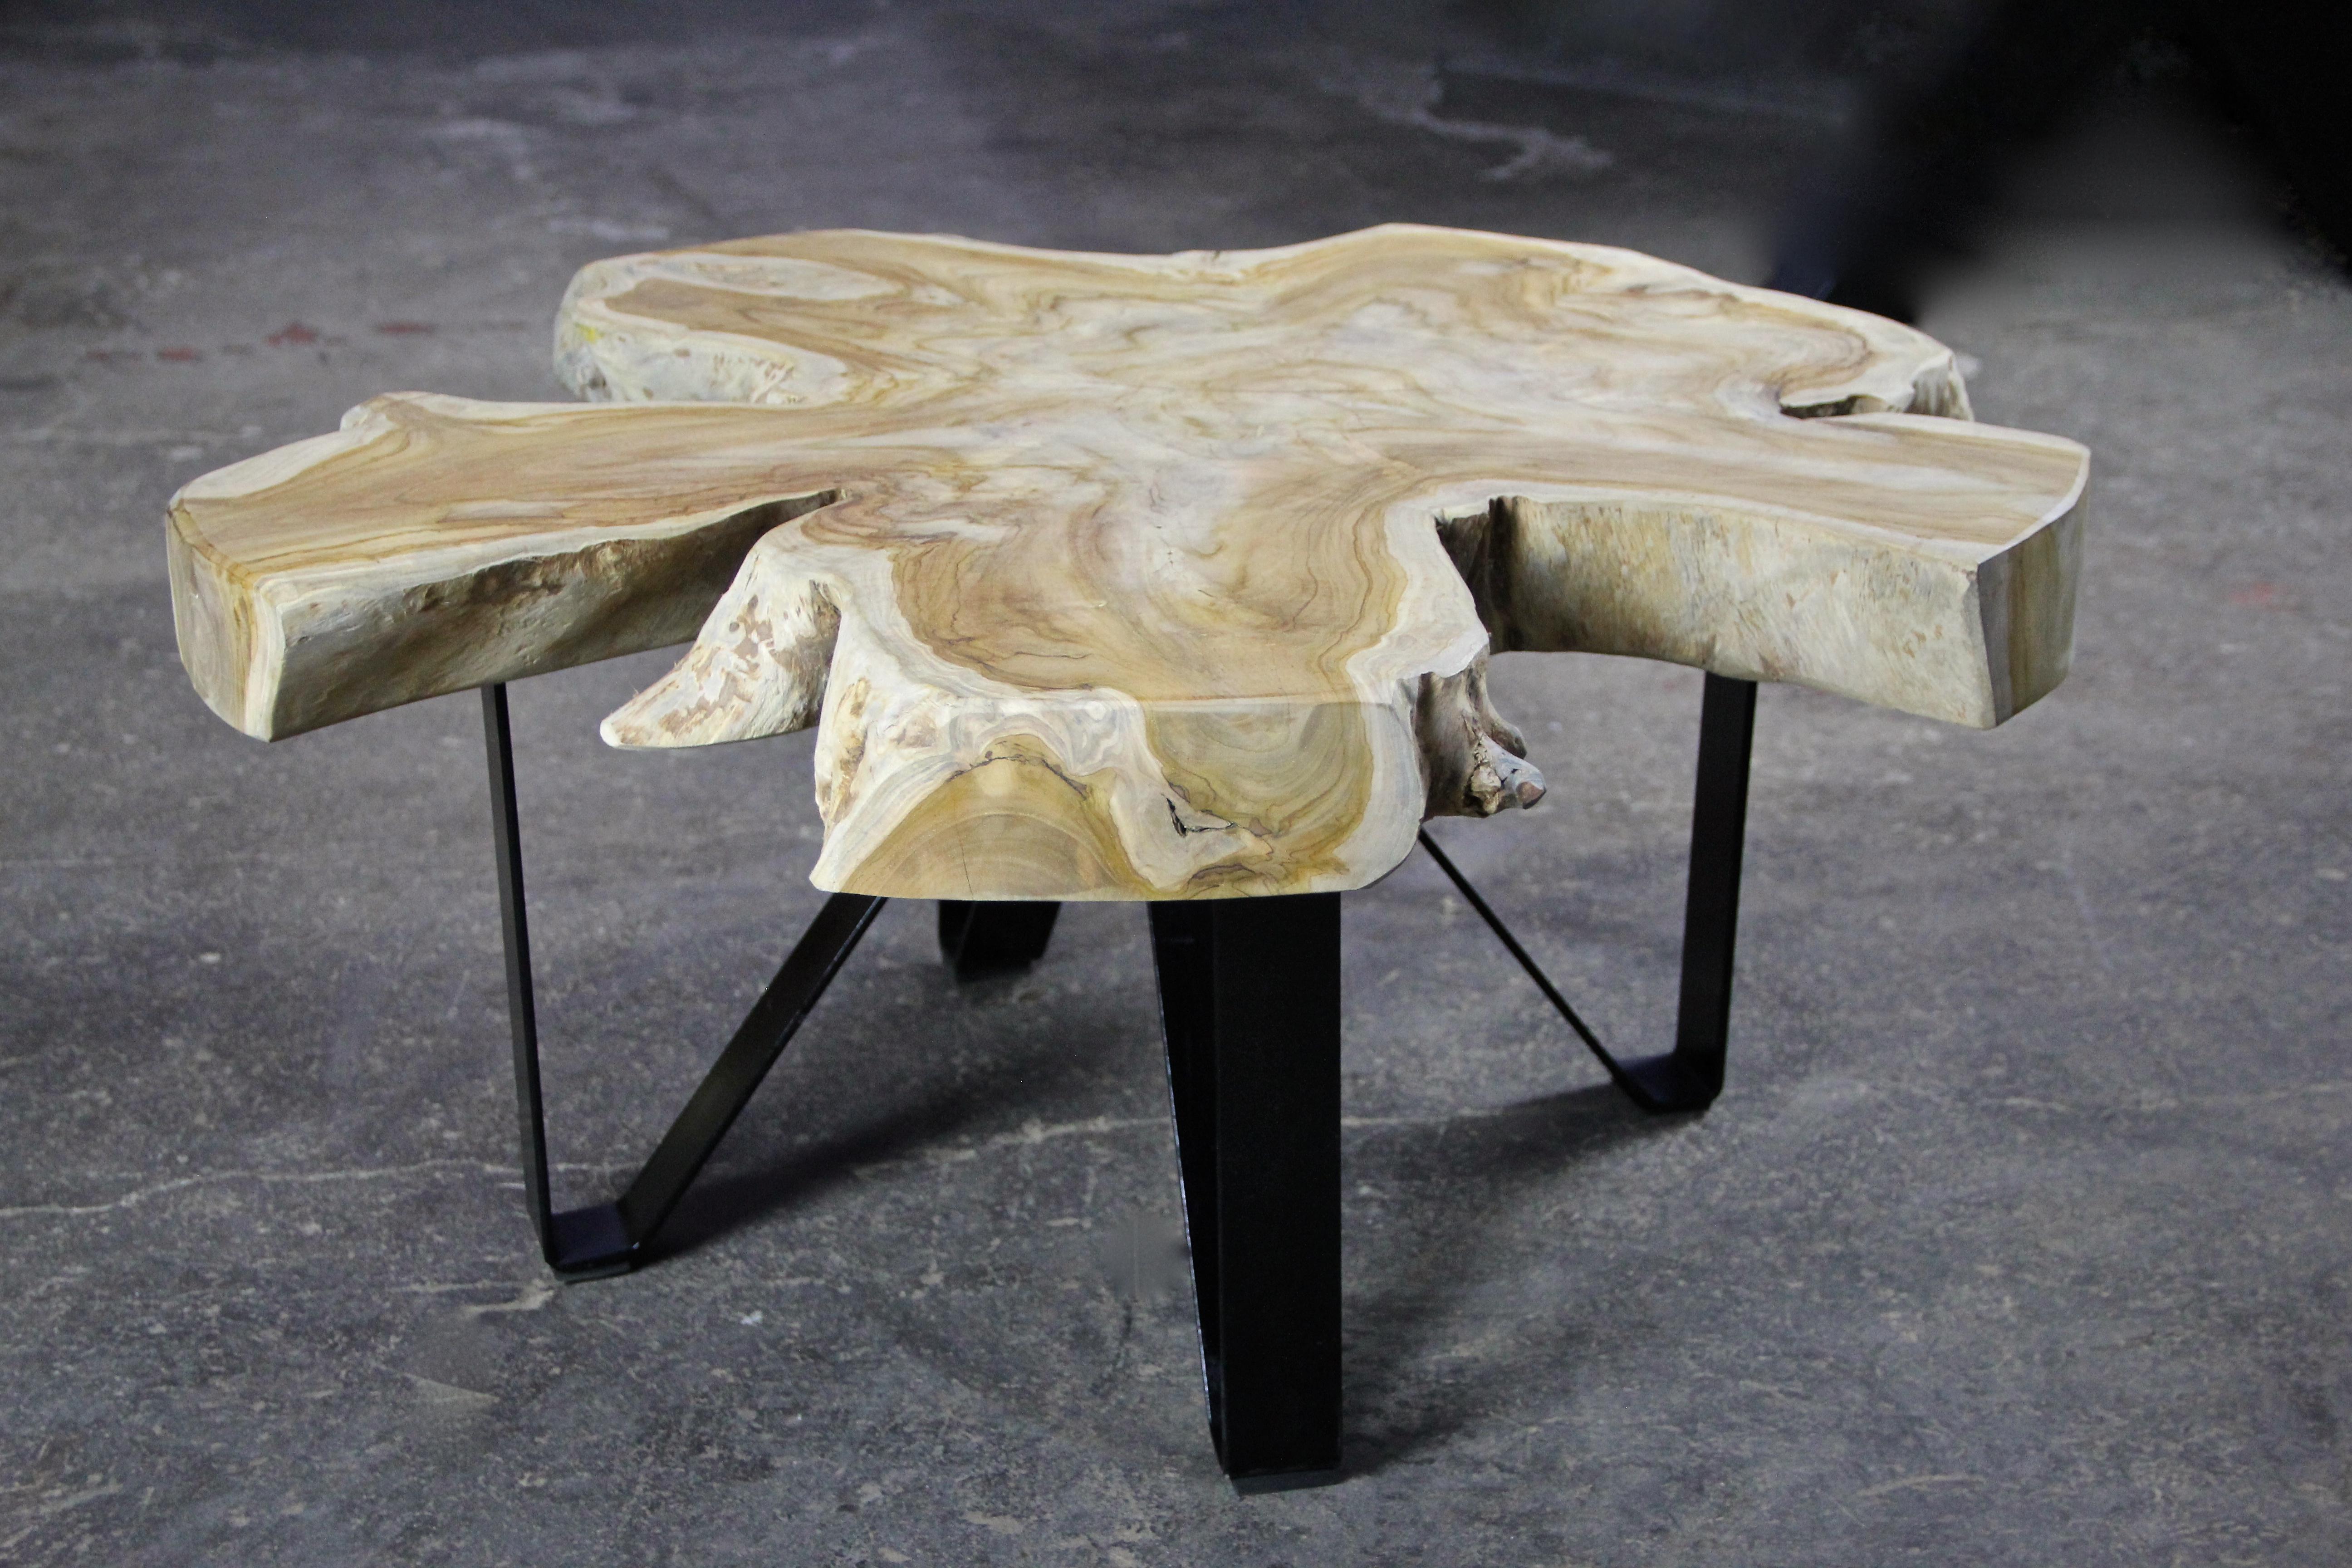 Teak Wood Coffee Table/ Sofa Table on Black Metal Feet, Organic Modern 3